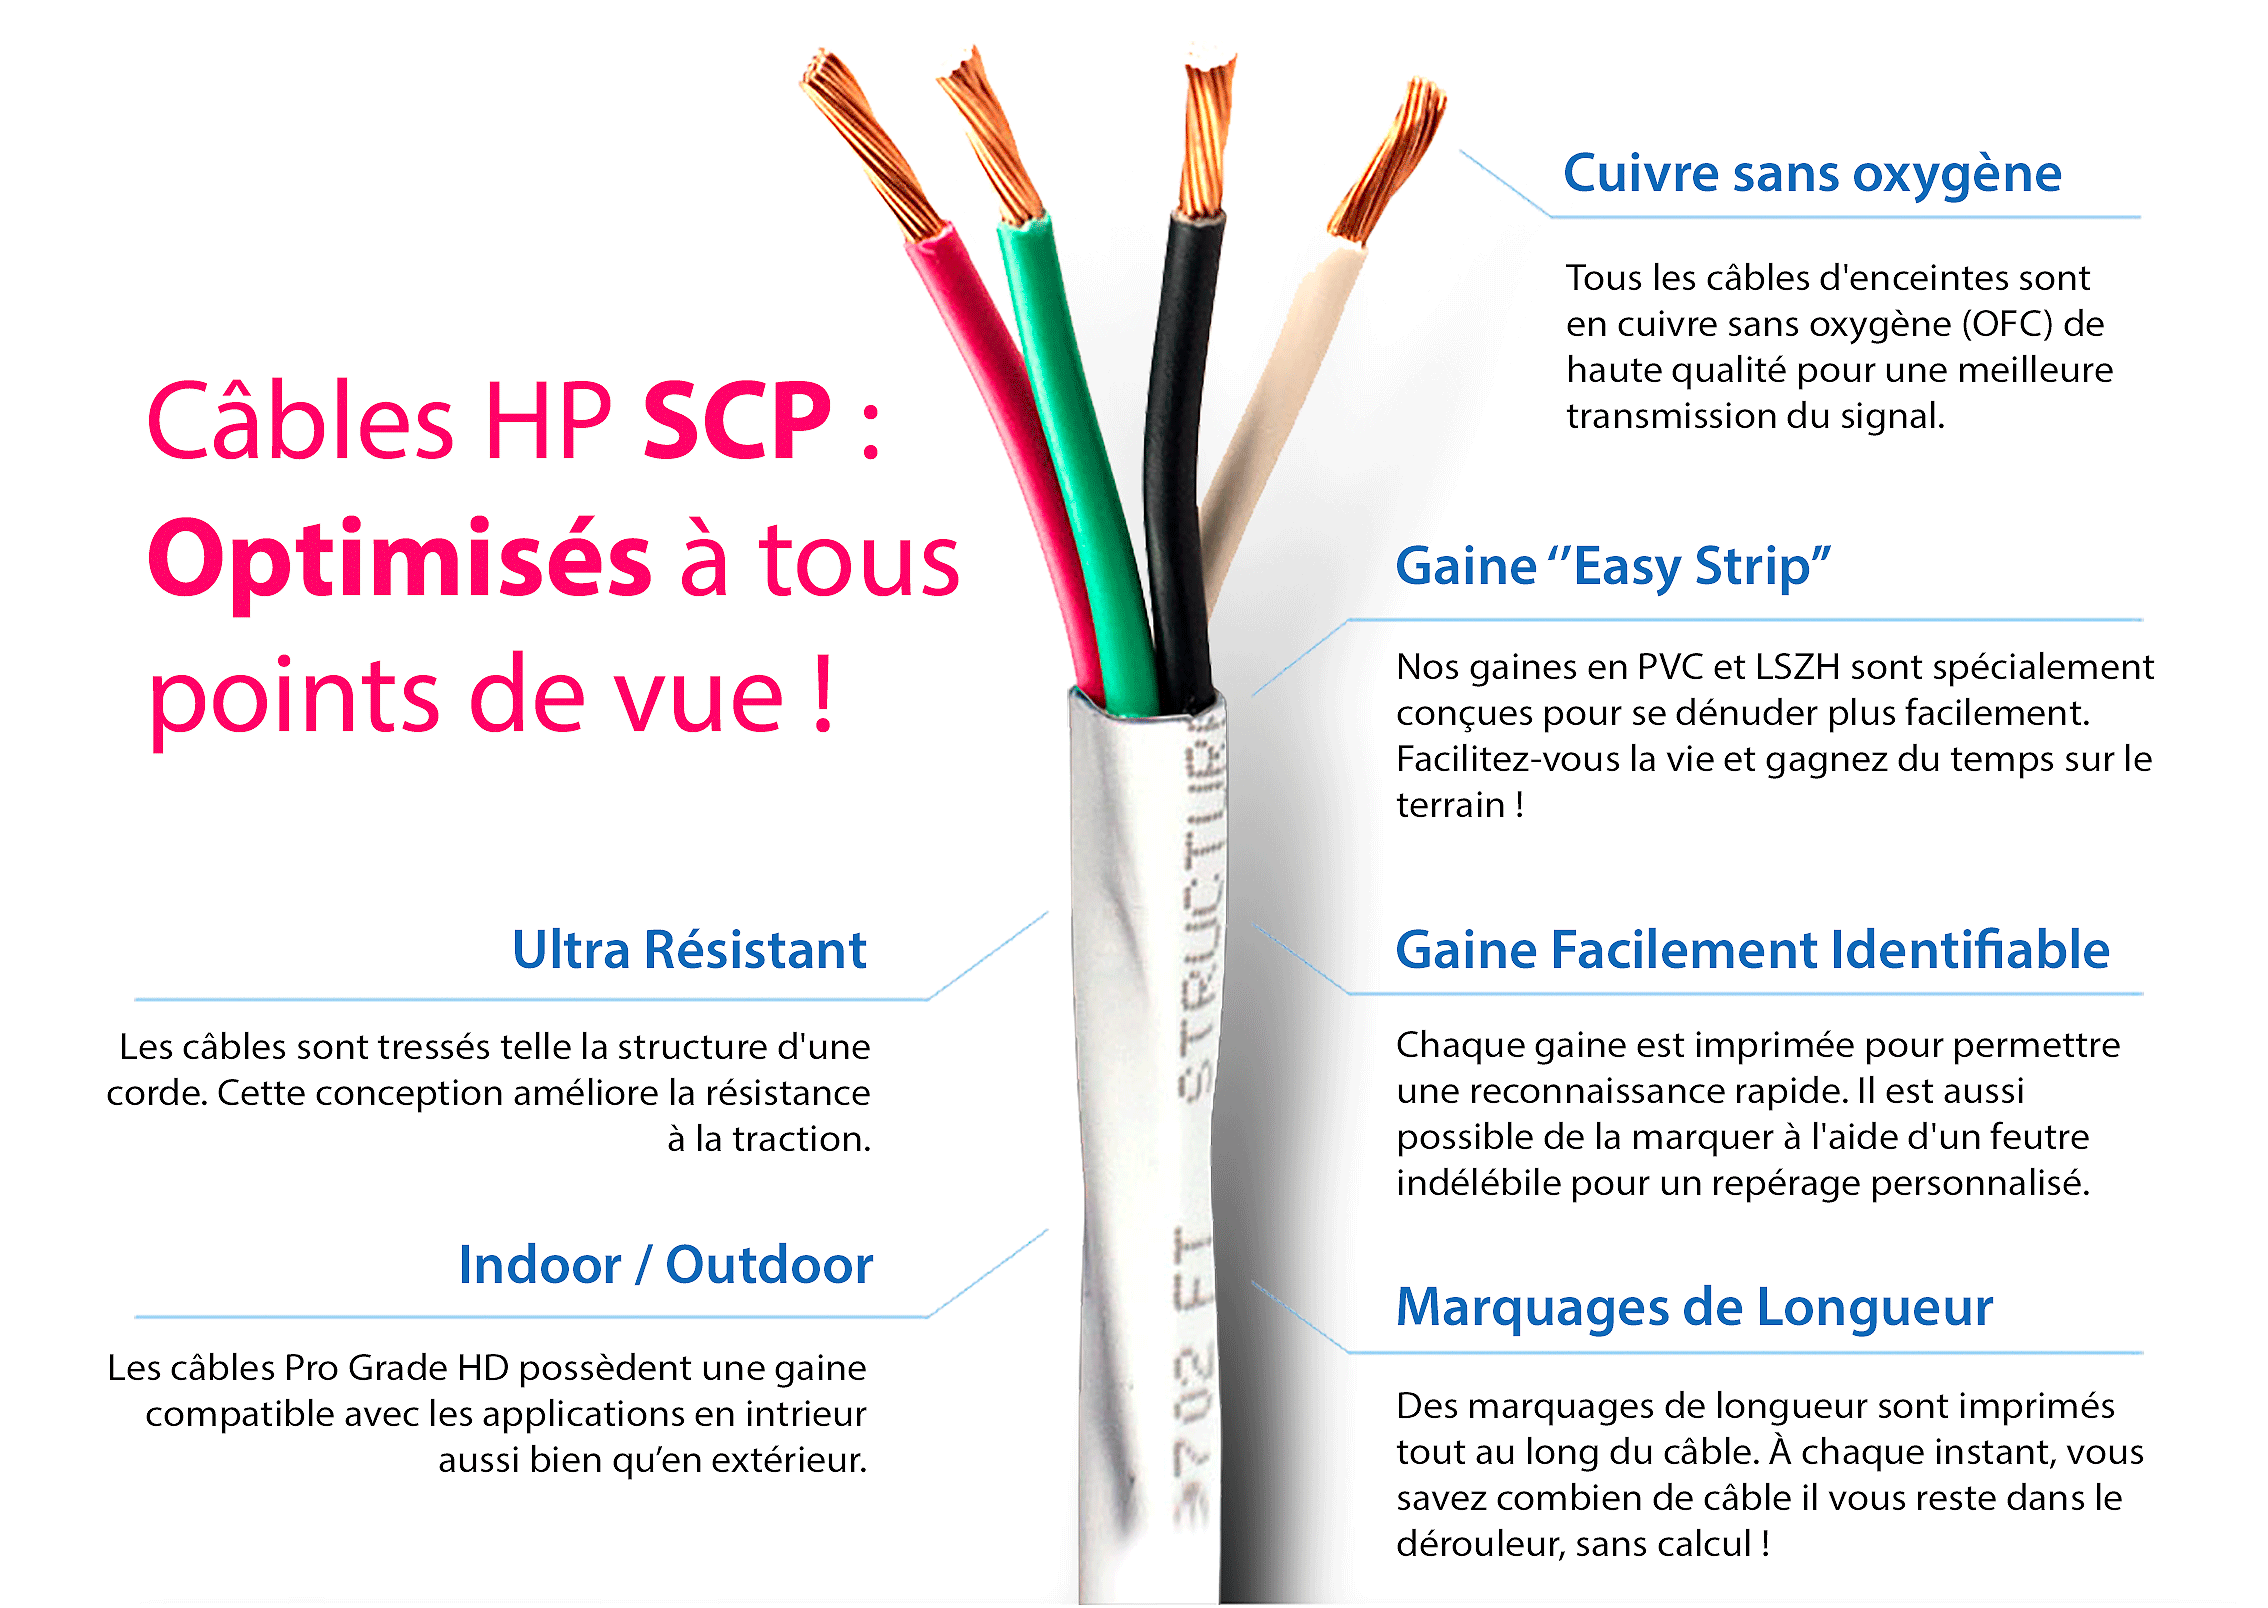 Gros plan sur les câbles HP SCP !